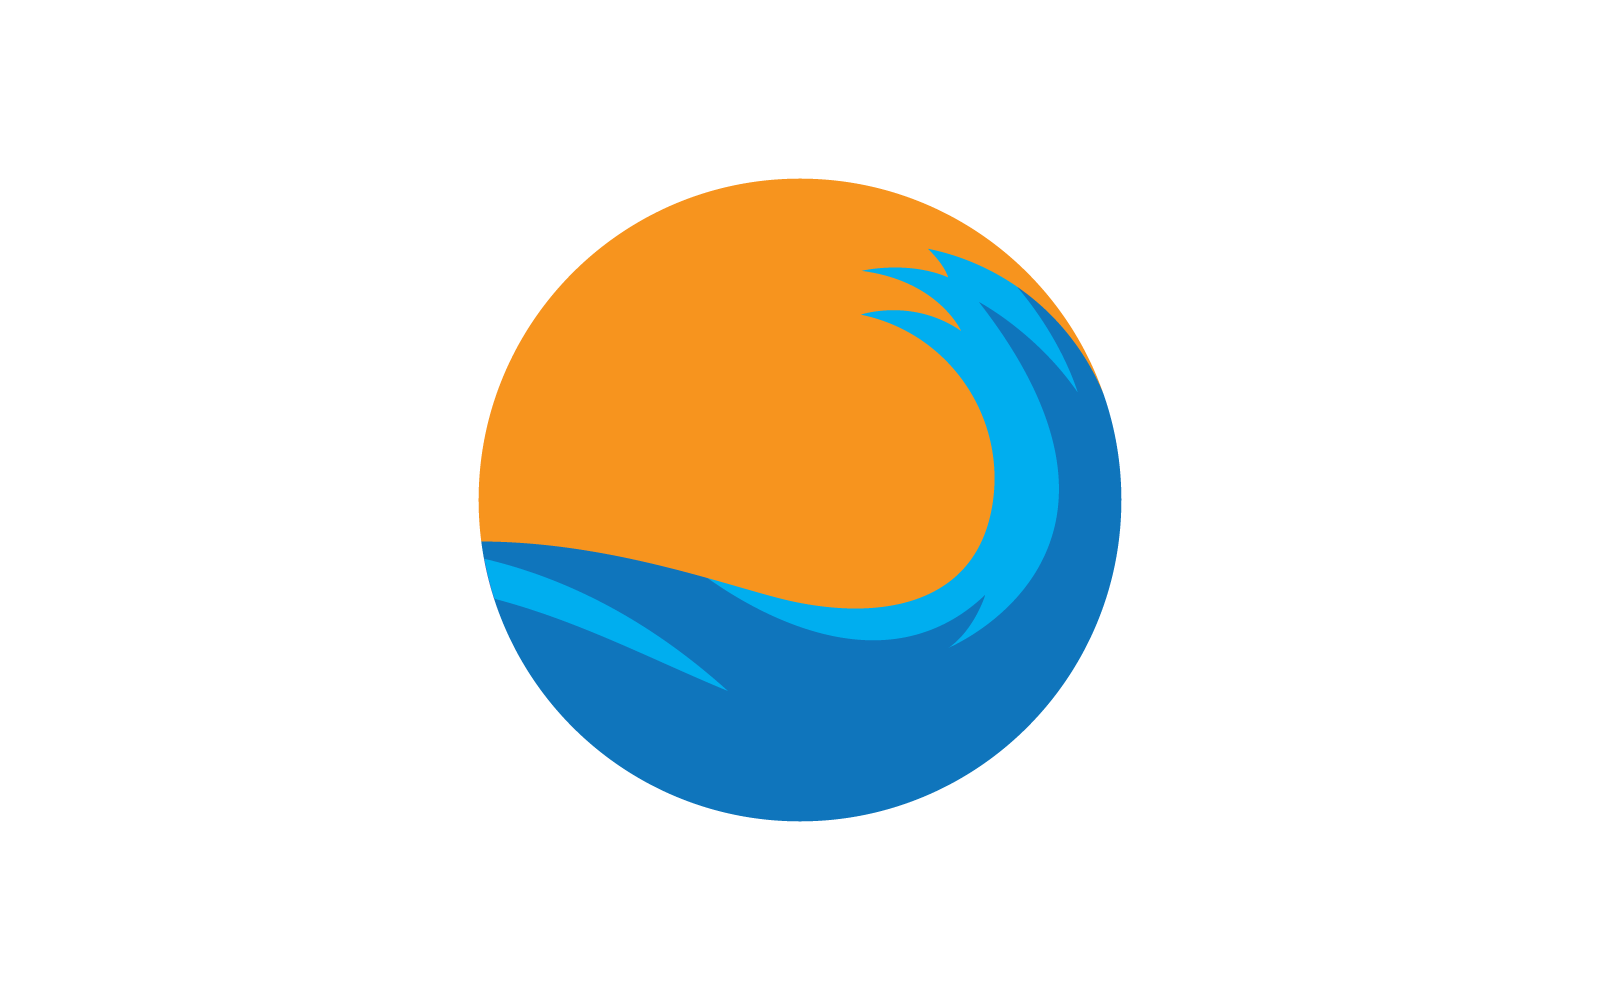 Diseño plano de plantilla vectorial de logotipo de ilustración de onda de agua